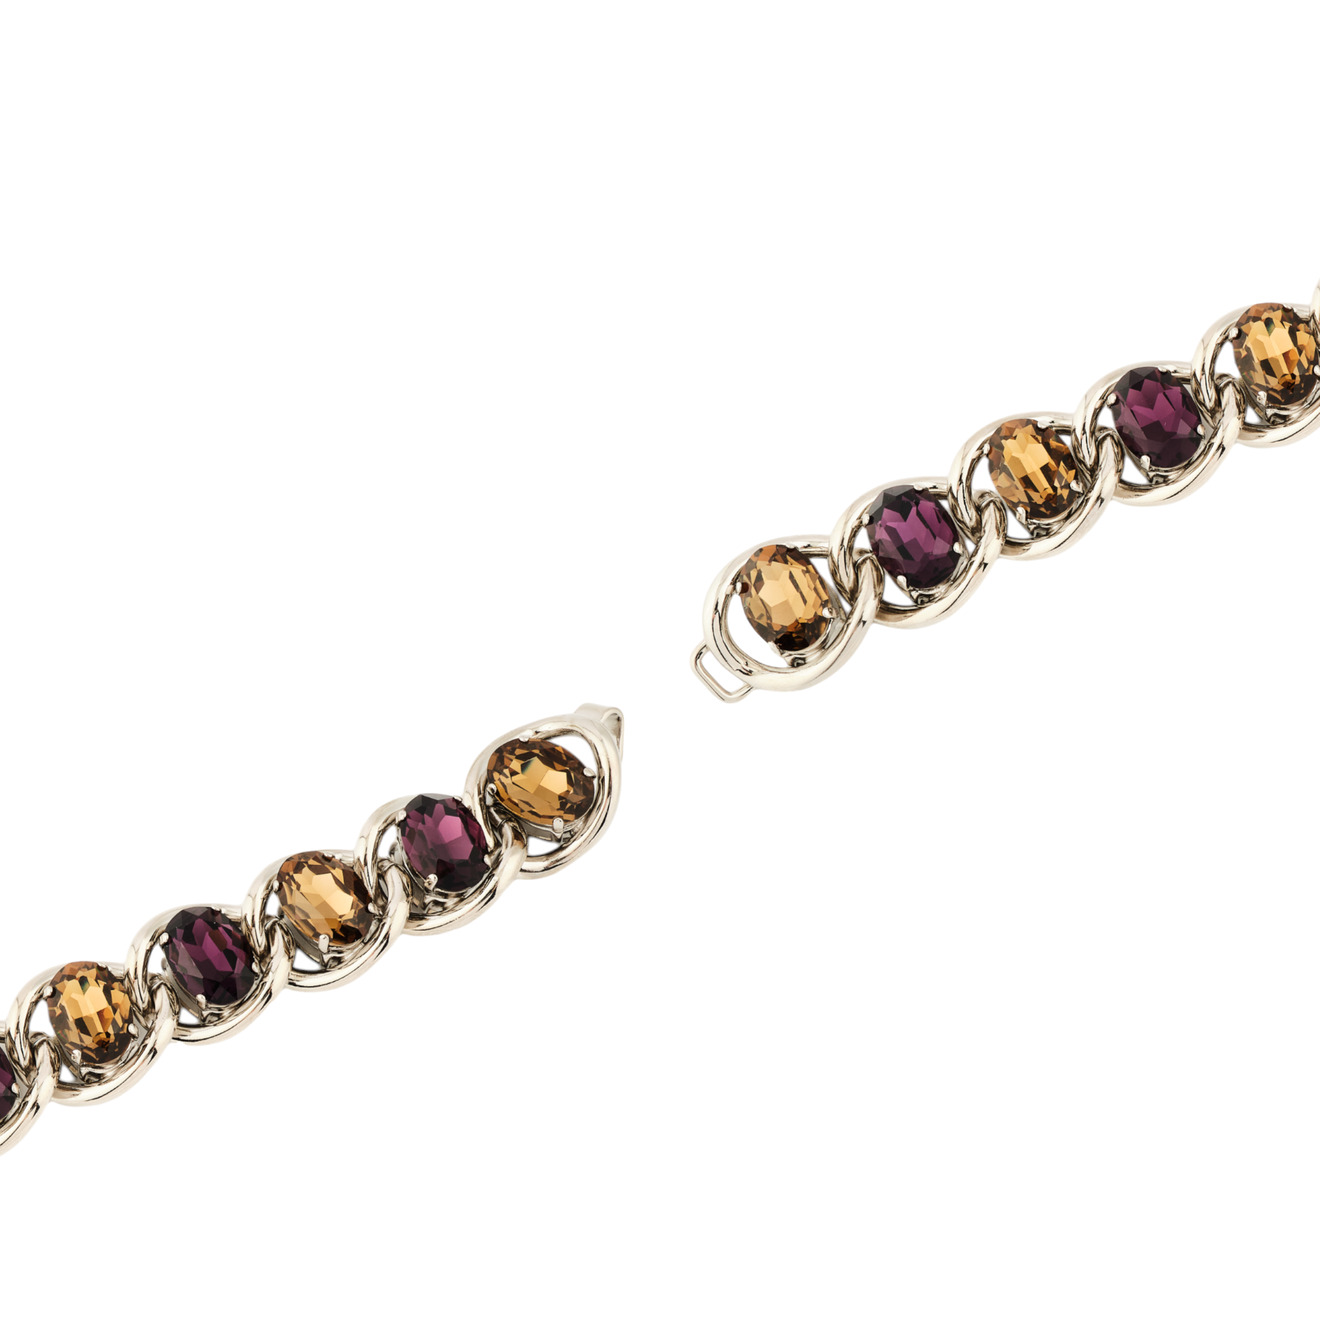 Marni Браслет-цепь с желто-фиолетовыми кристаллами marni биколорный браслет цепь с подвесками из колец